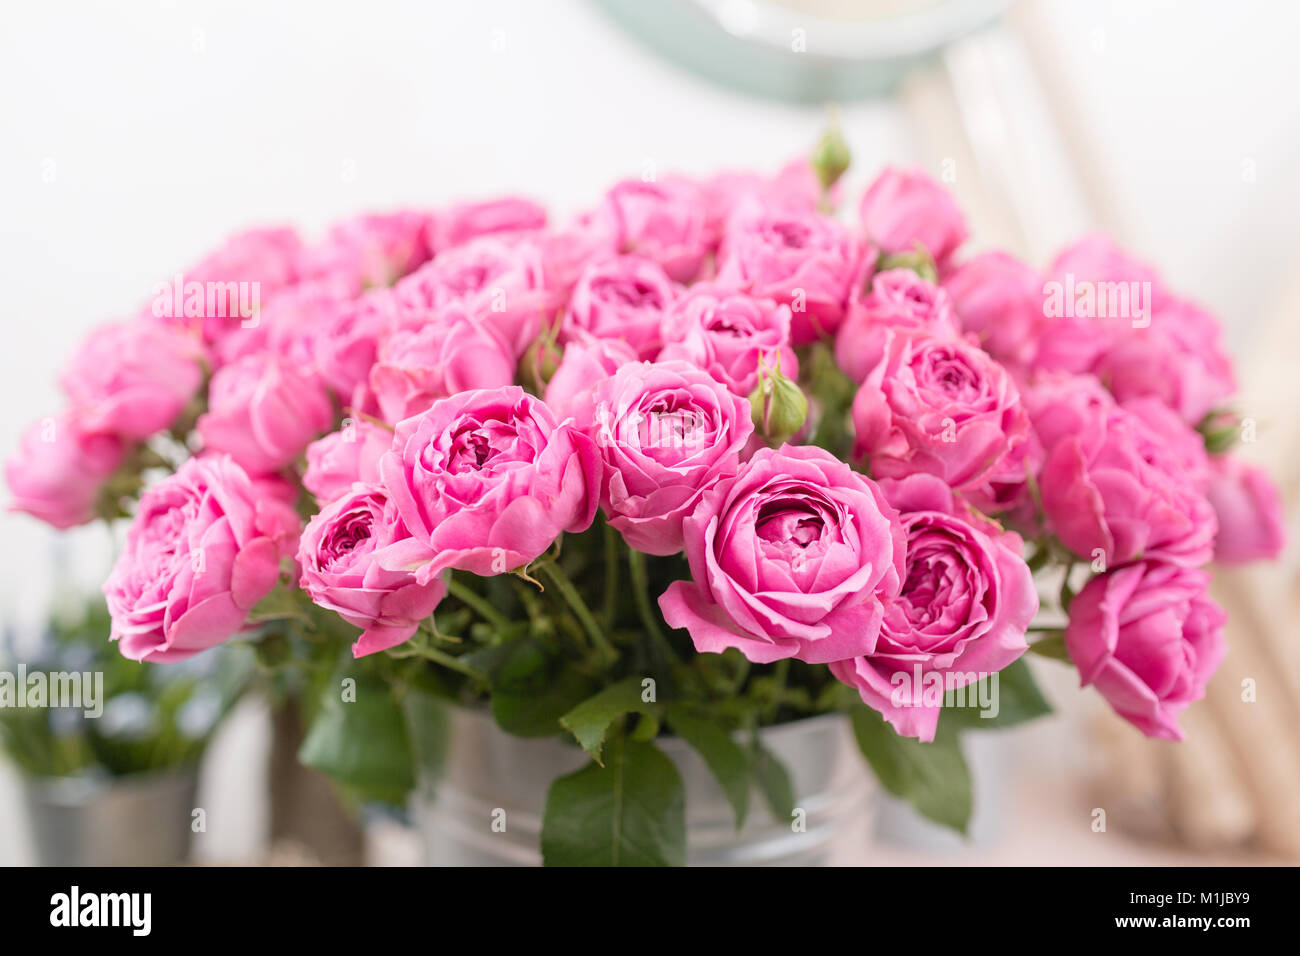 Rose Misty Blasen. Strauß Blumen rosa Rosen in Vase aus Metall. Shabby Chic  Wohnkultur. Florist in einem Blumenladen Stockfotografie - Alamy